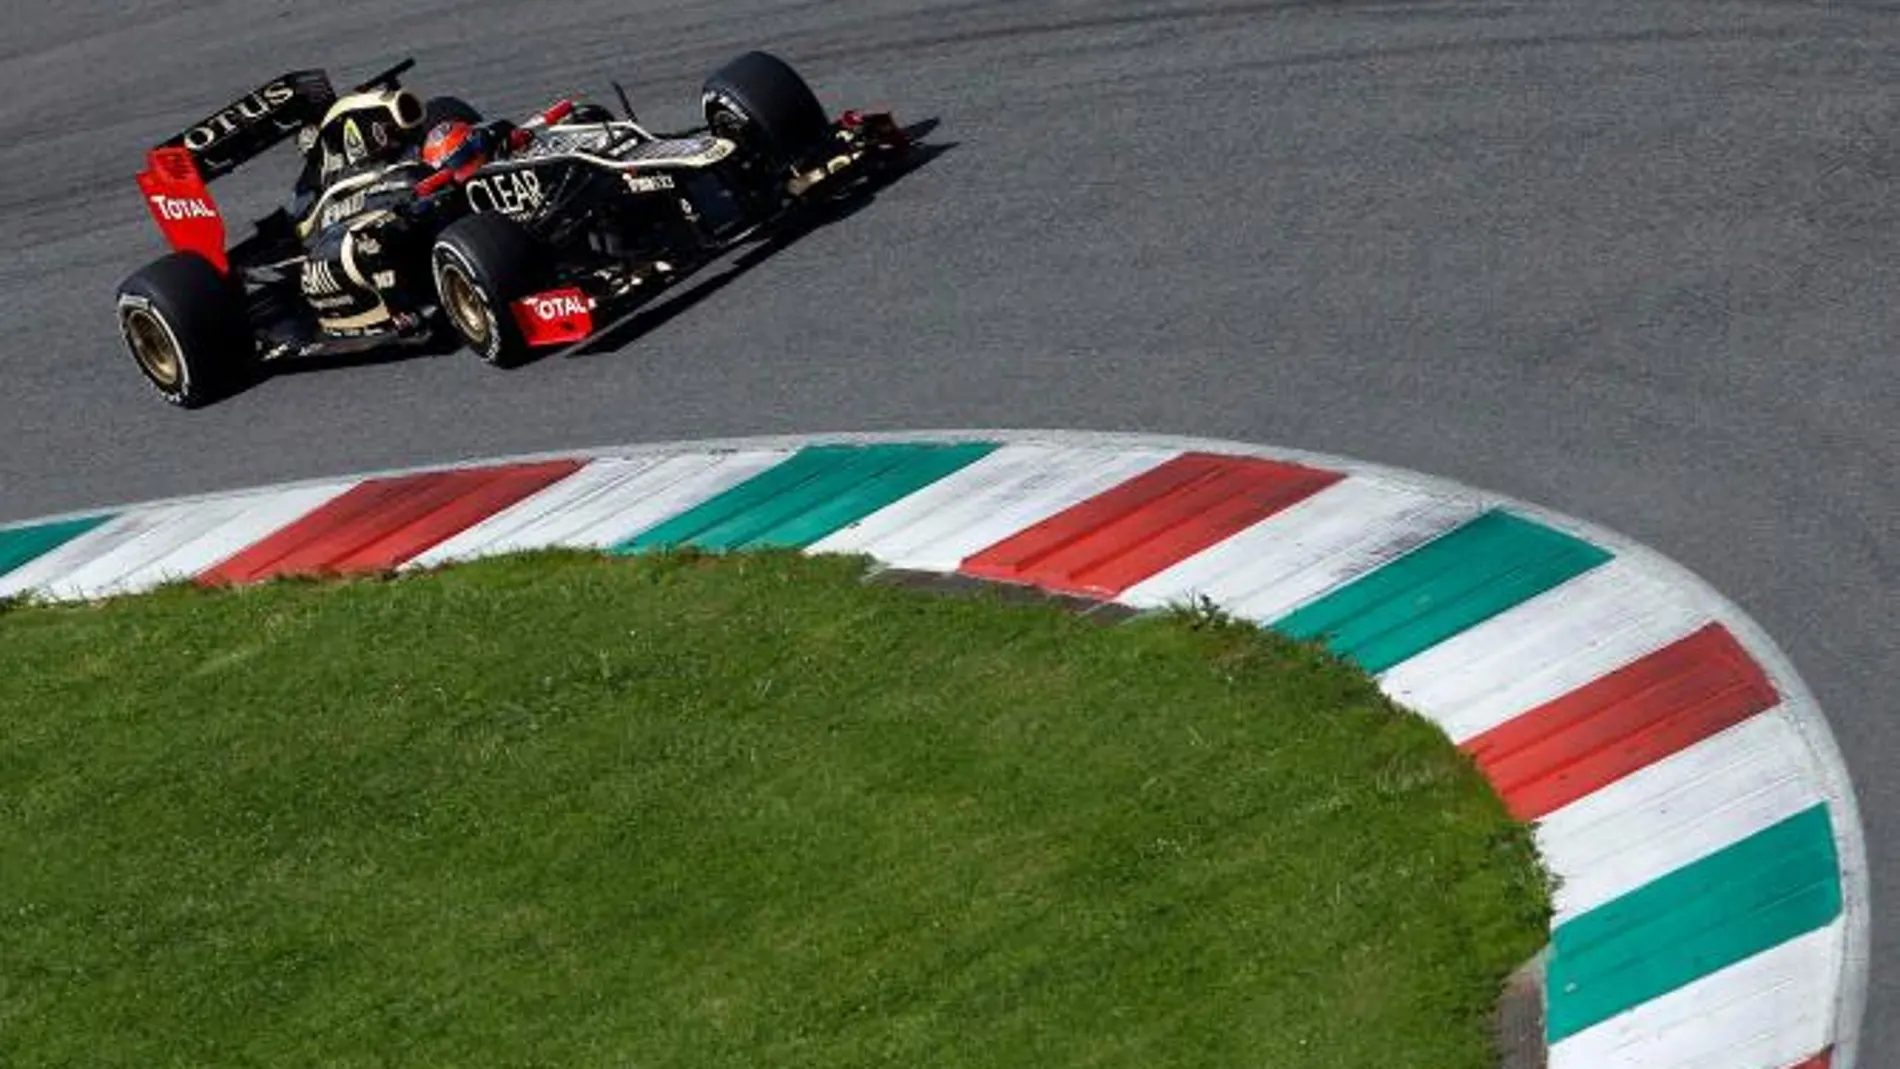 Grosjean líder en último día de ensayos en Mugello delante de Vettel y Alonso